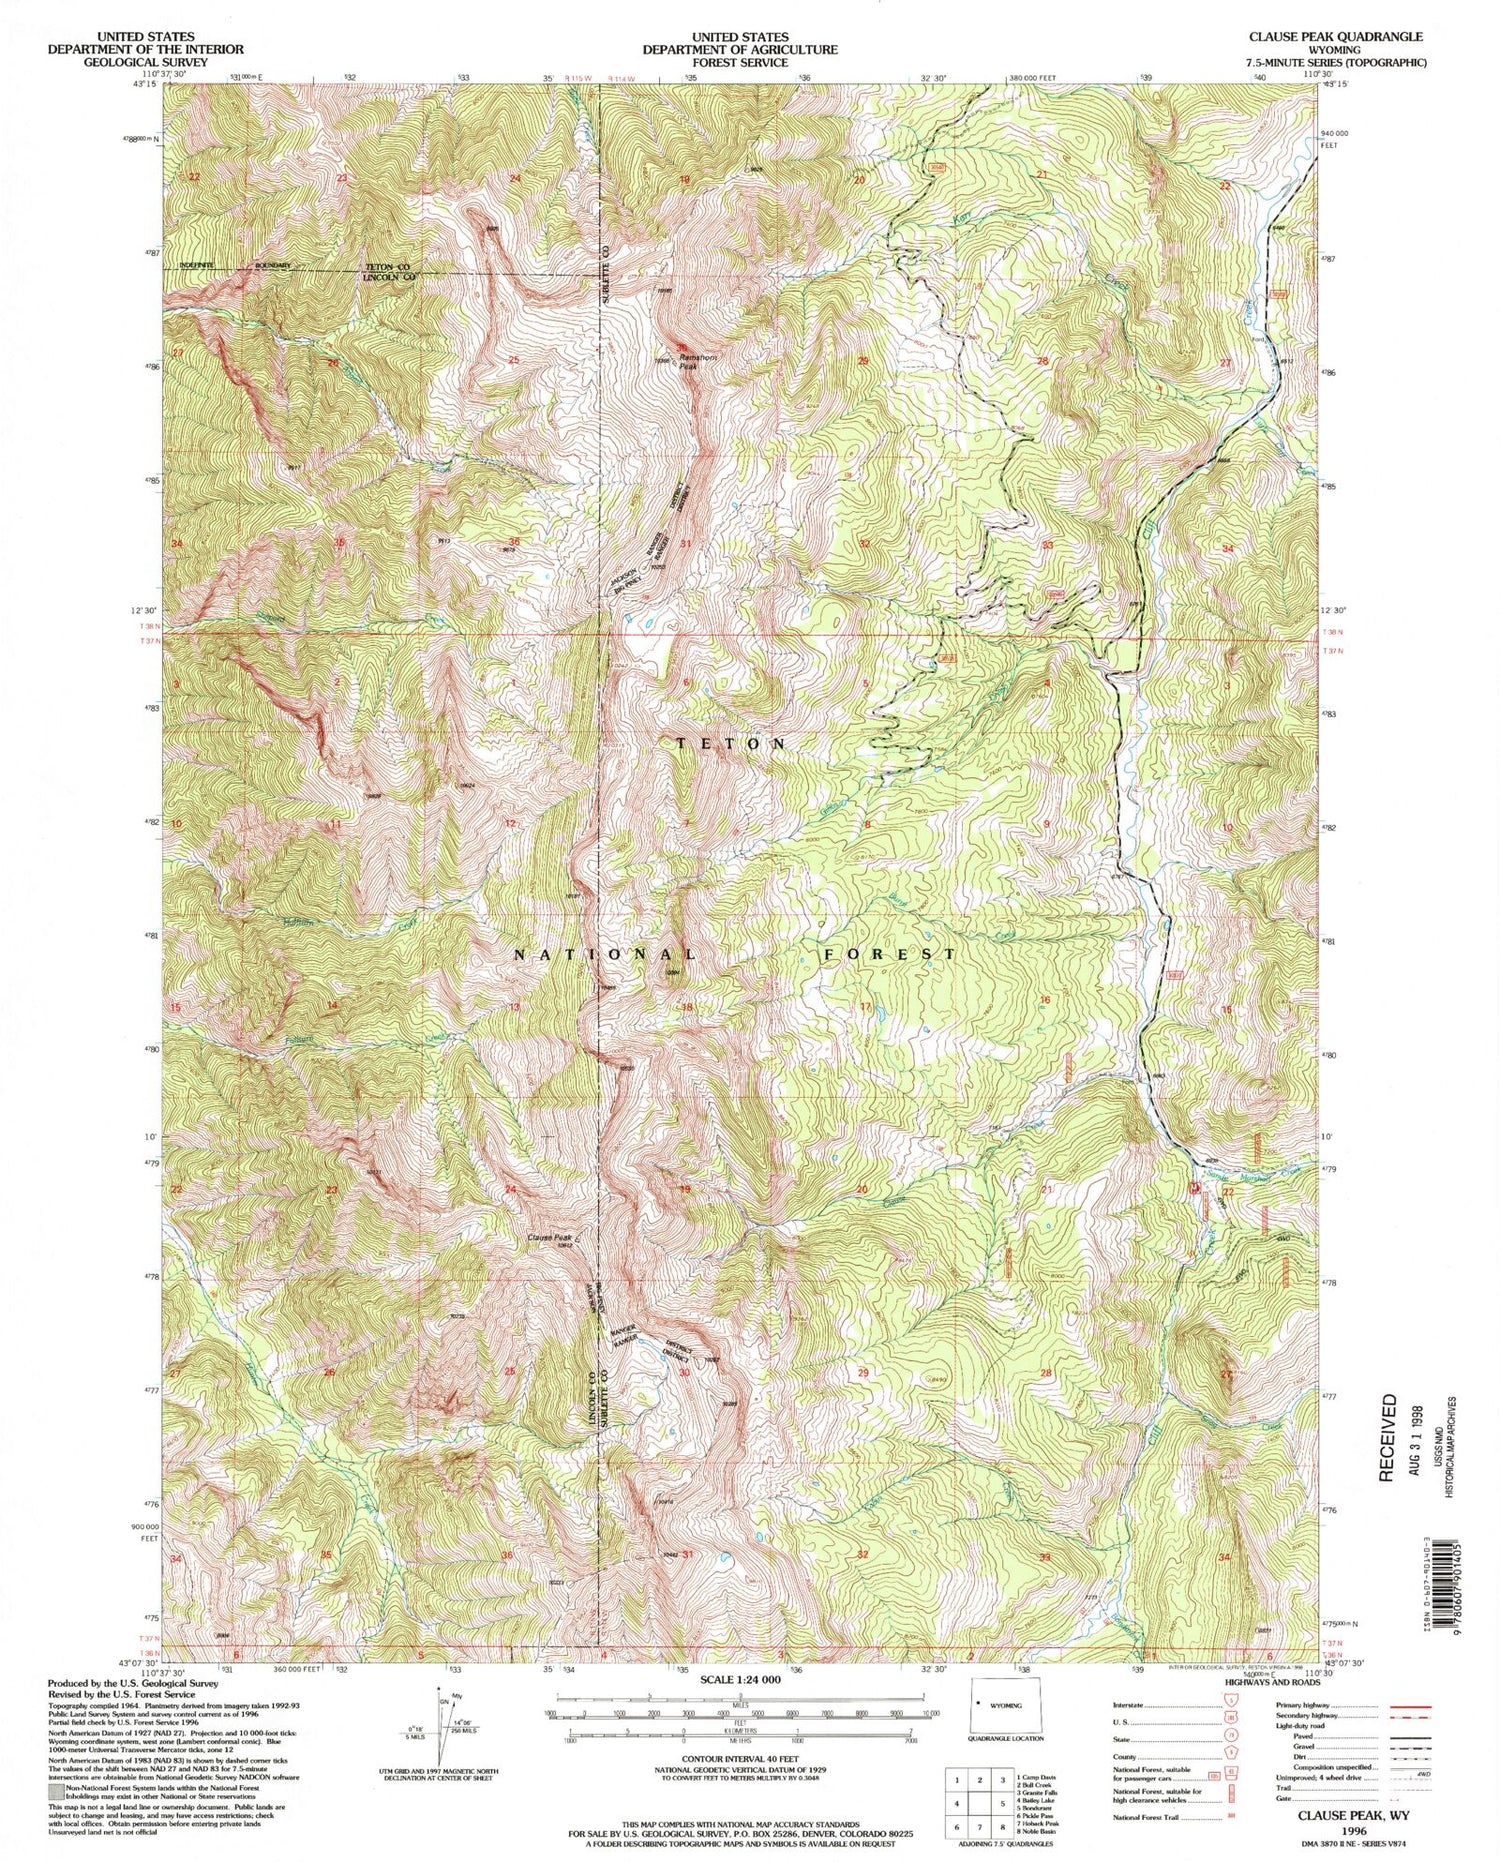 USGS Classic Clause Peak Wyoming 7.5'x7.5' Topo Map Image